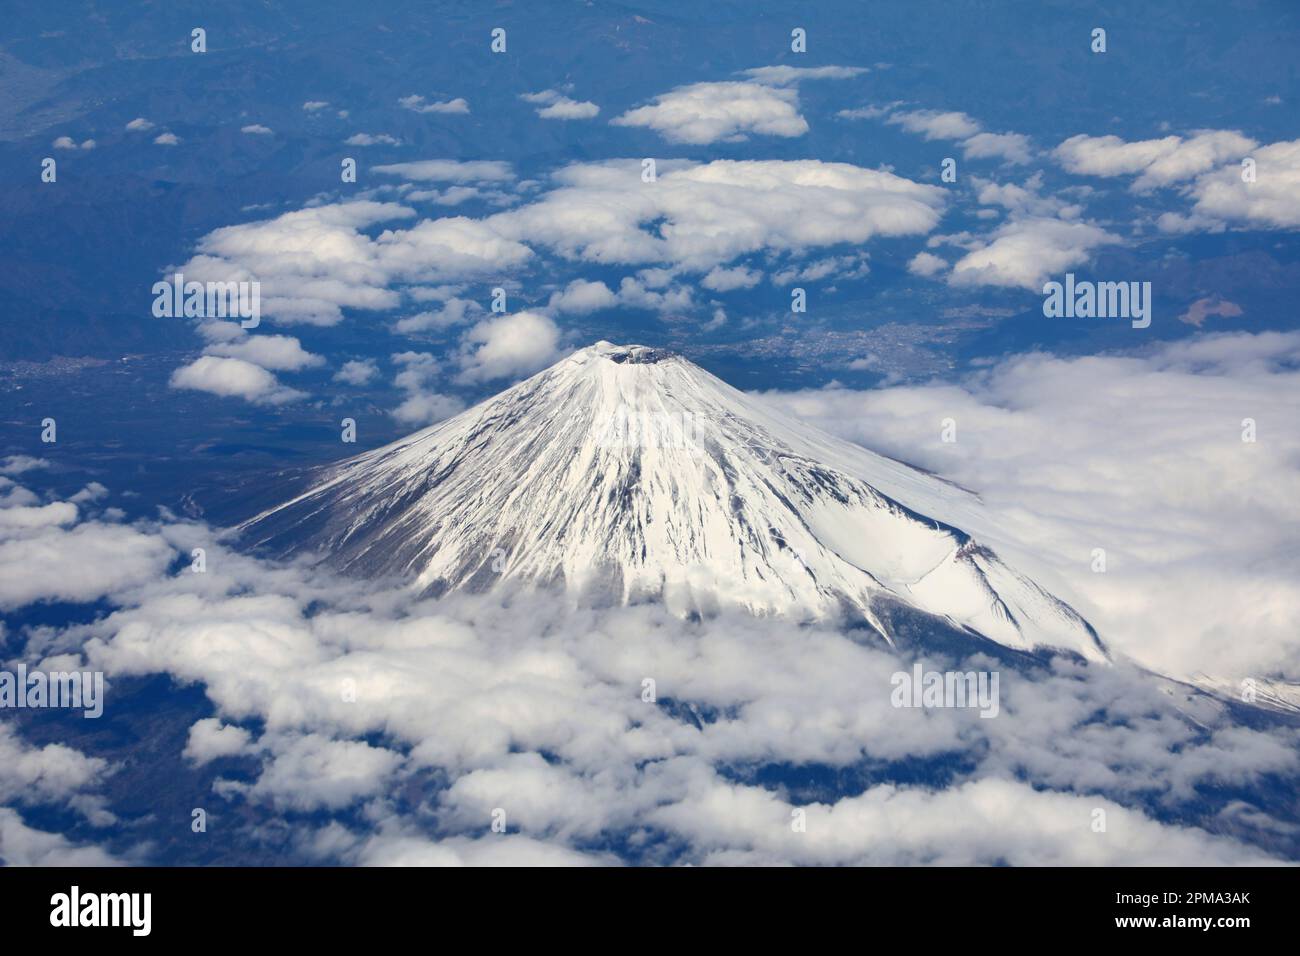 Vue aérienne du sommet enneigé du Mont Fuji au Japon Banque D'Images